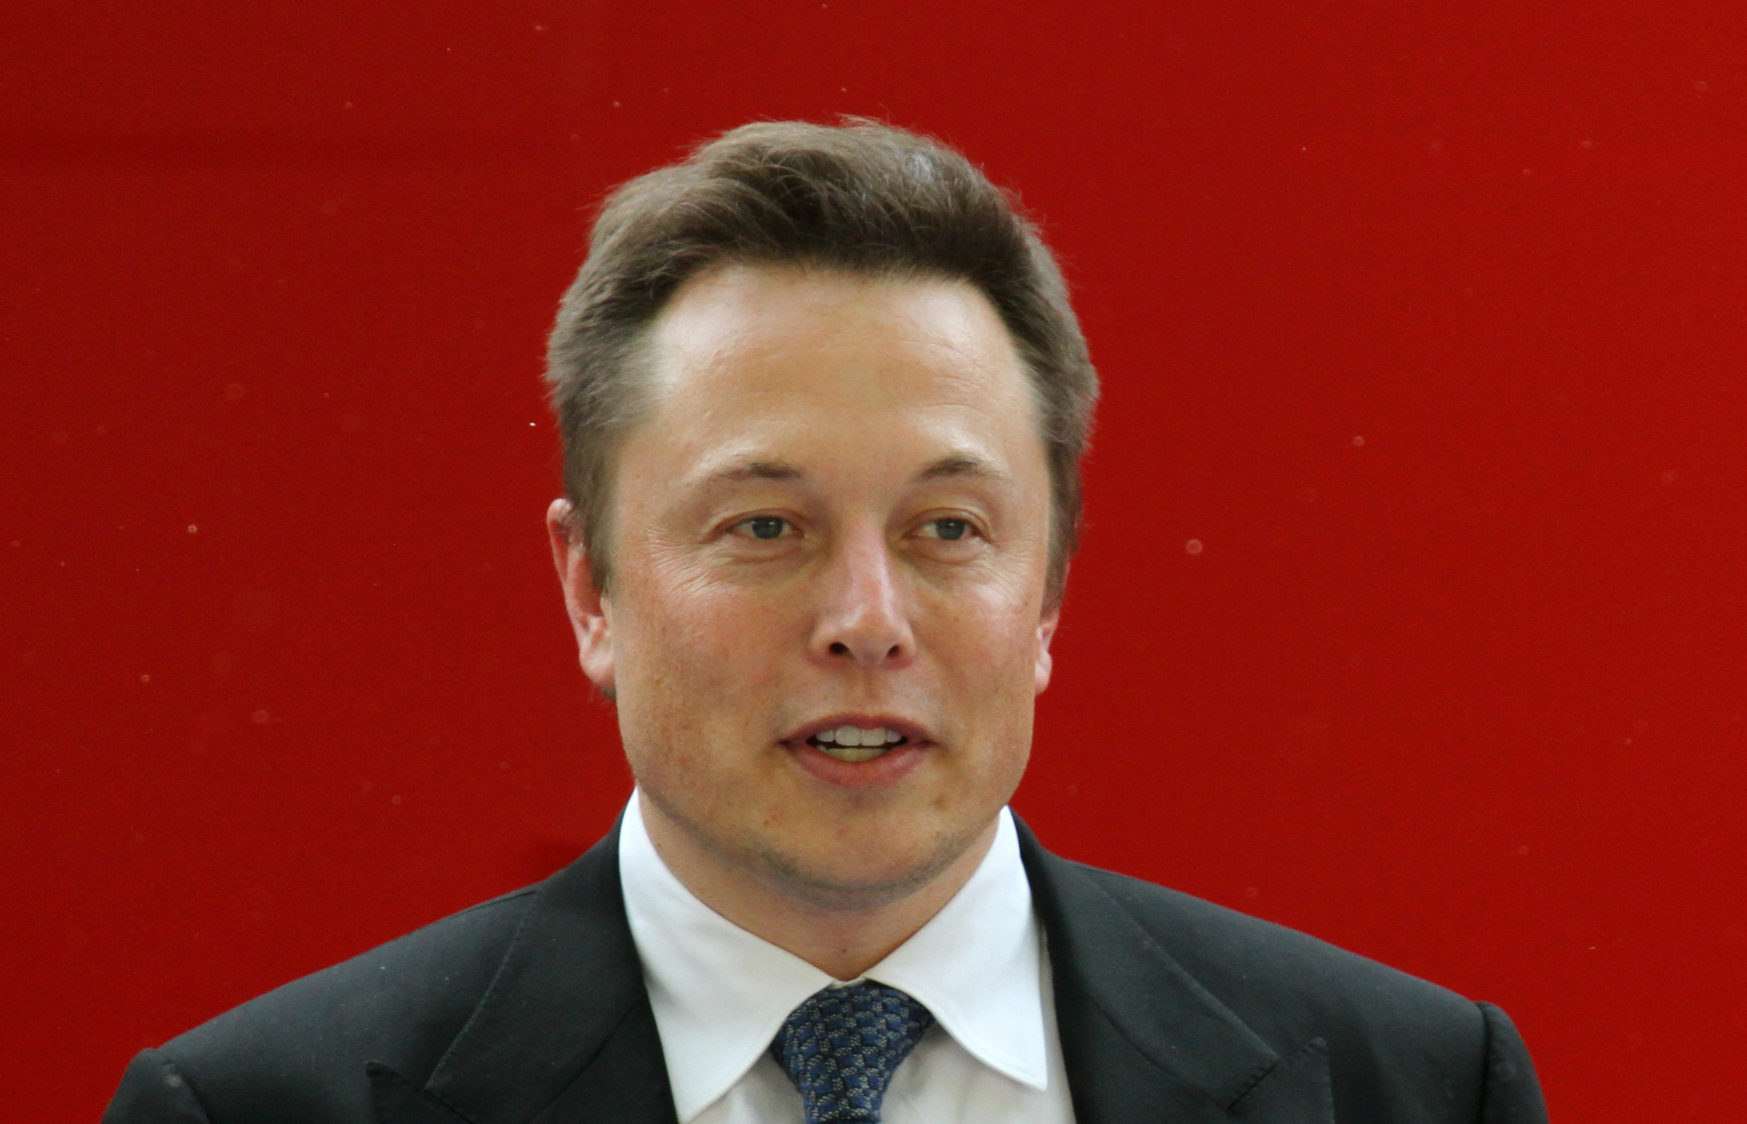 Elon Musk ist viertreichster Mensch der Welt